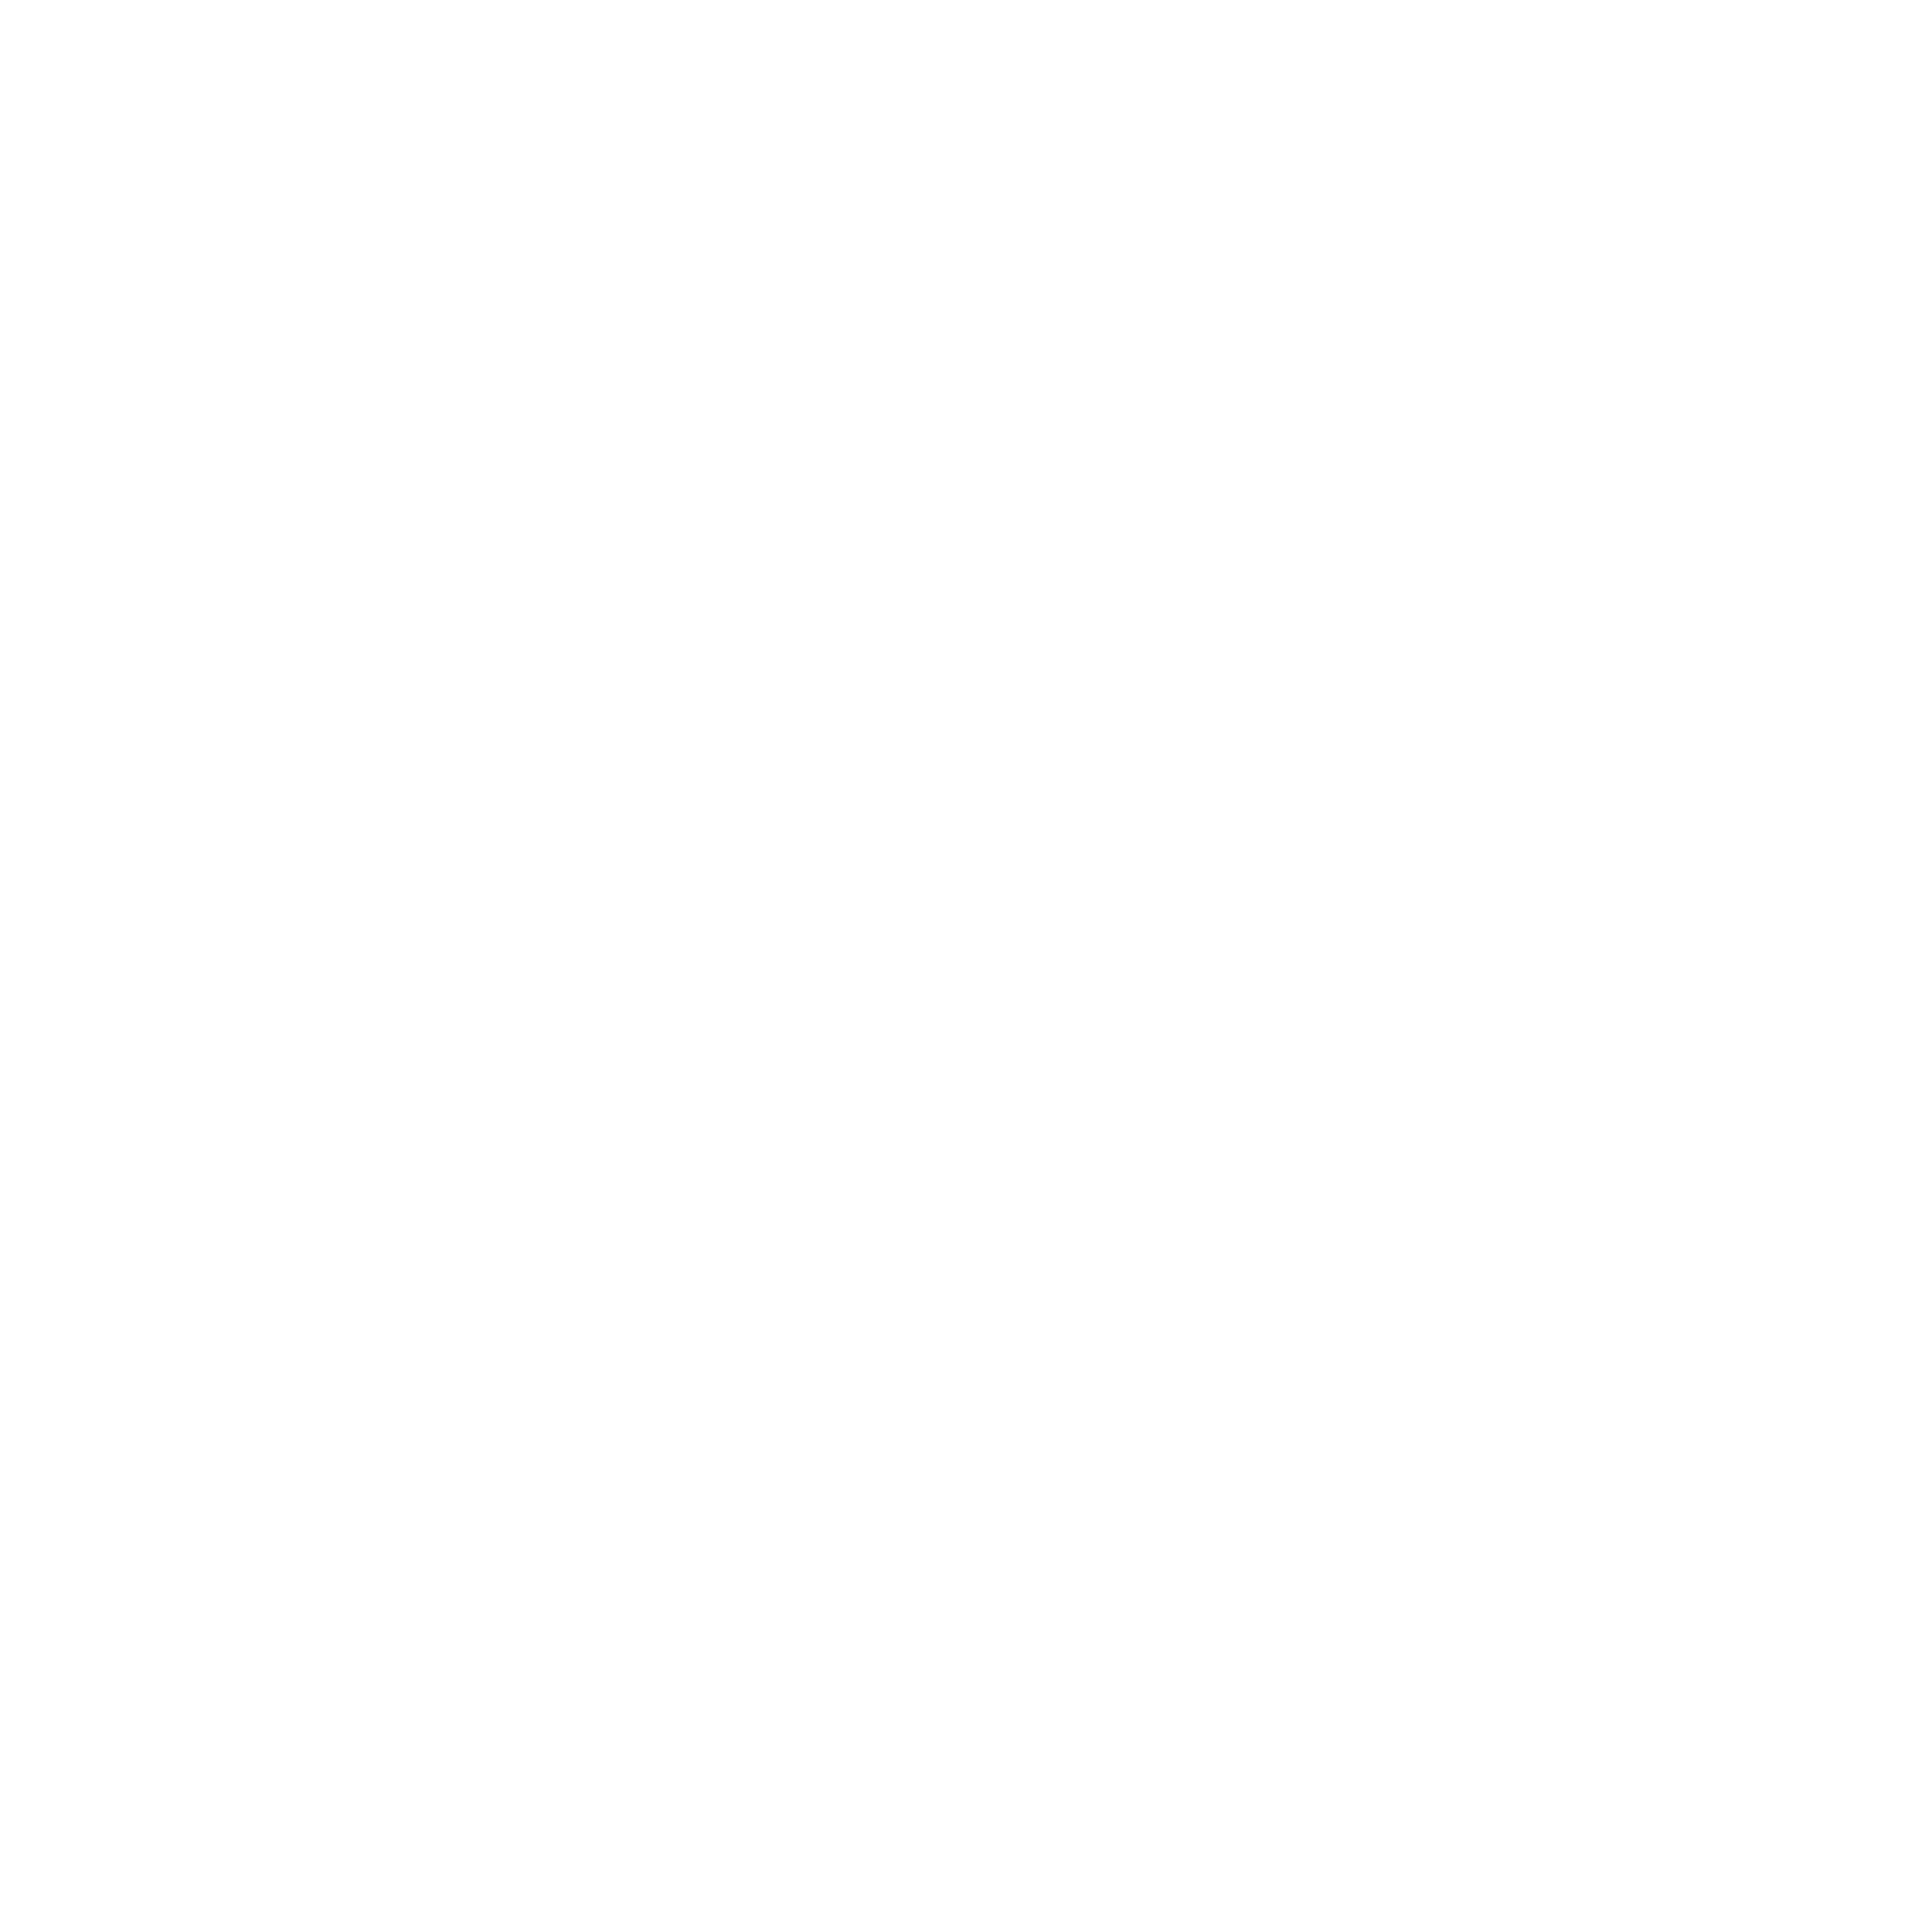 Centrica Logo - Centrica Logo PNG Transparent & SVG Vector